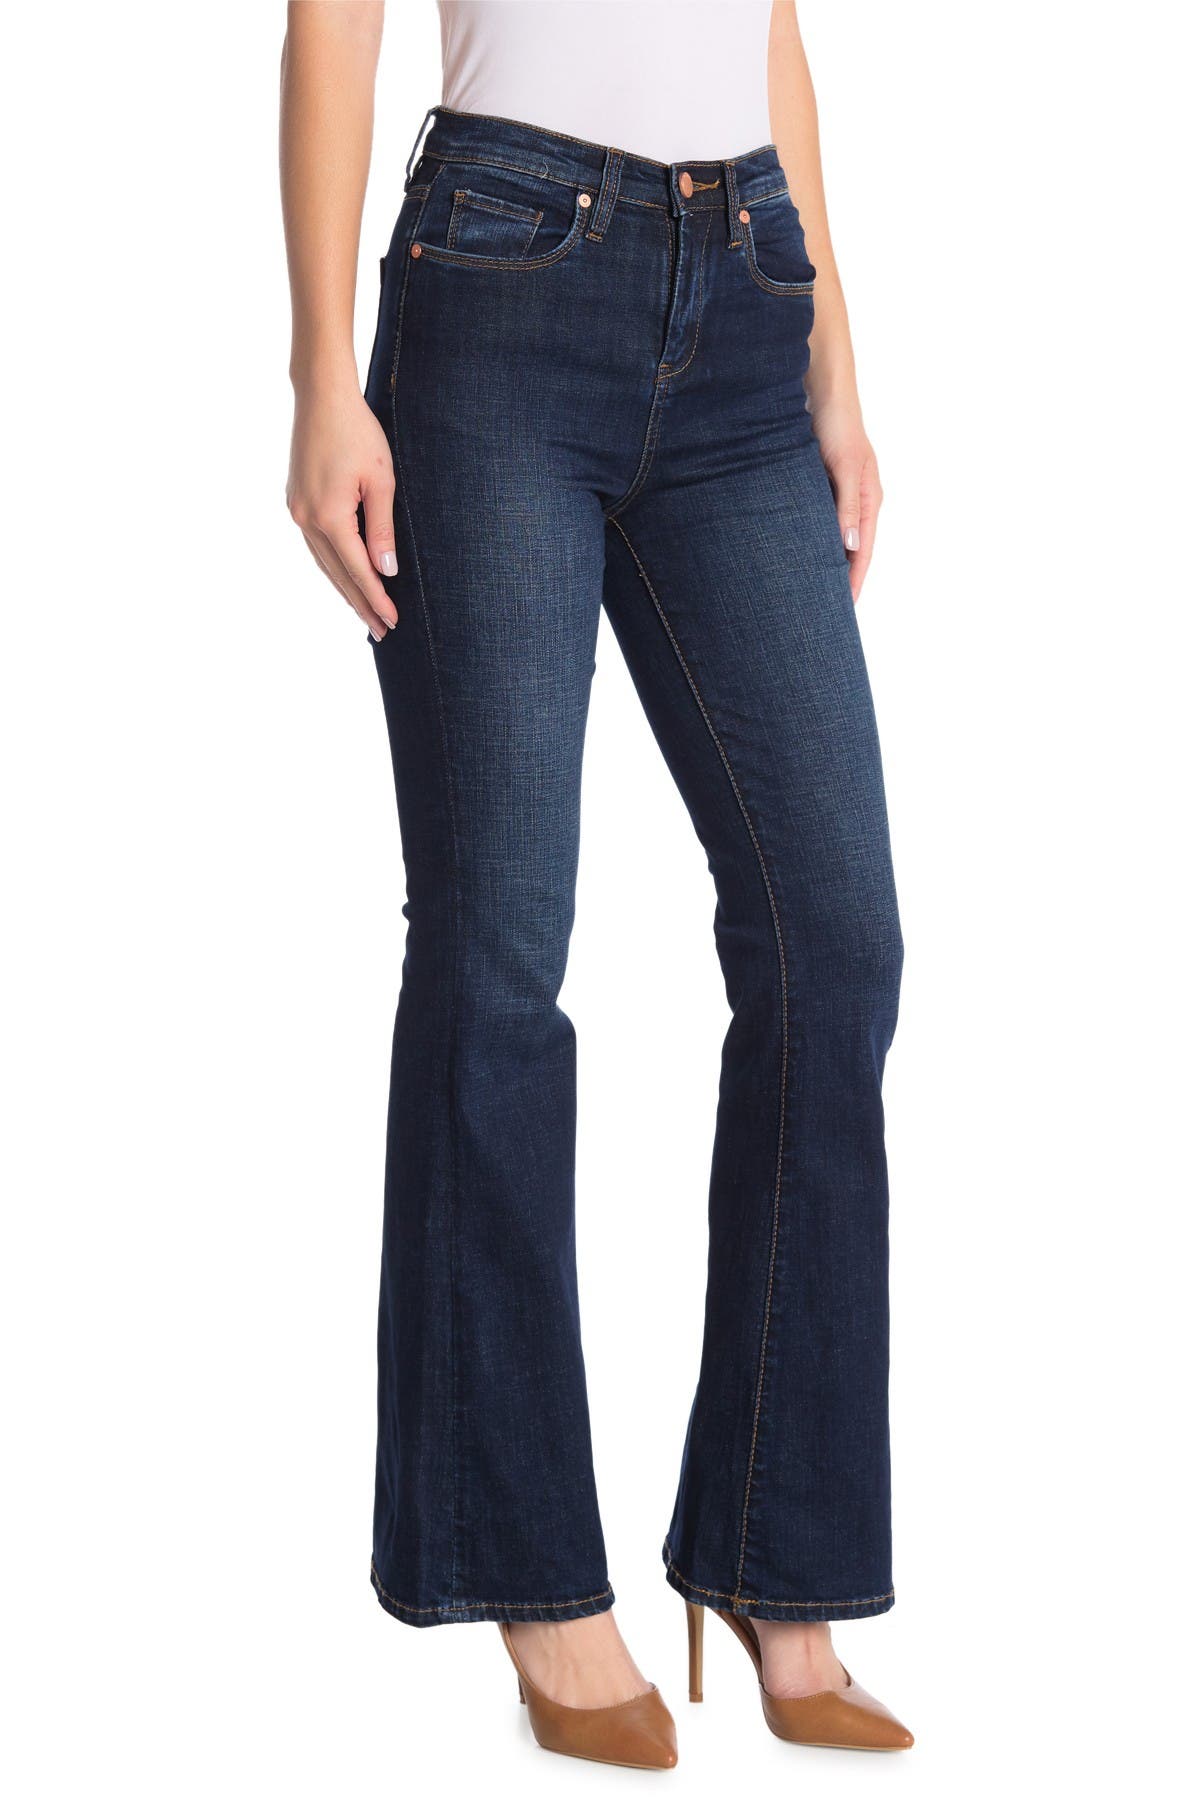 nordstrom rack flare jeans